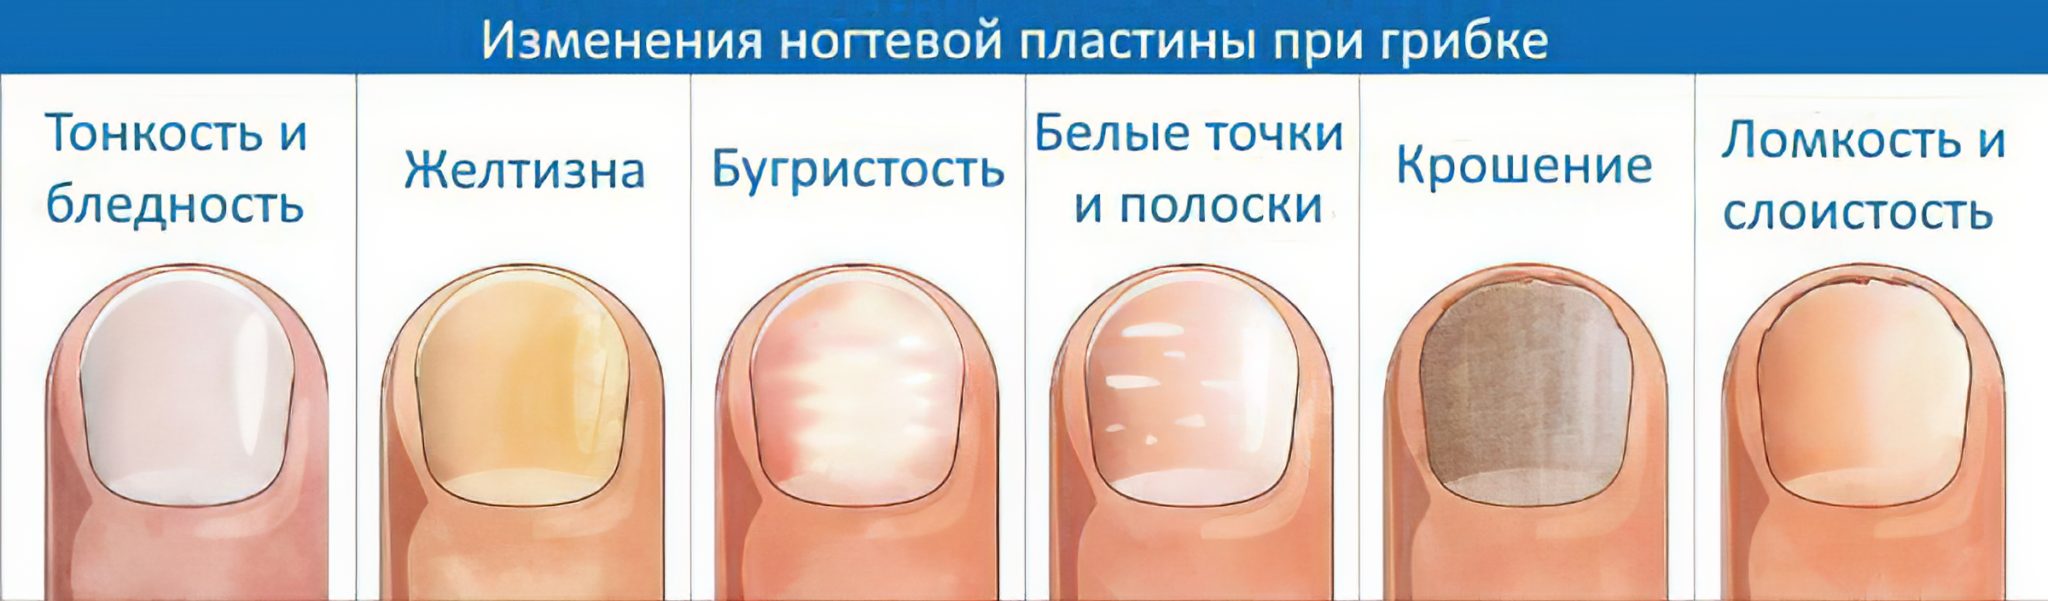 Грибковые заболевания ногтей схема